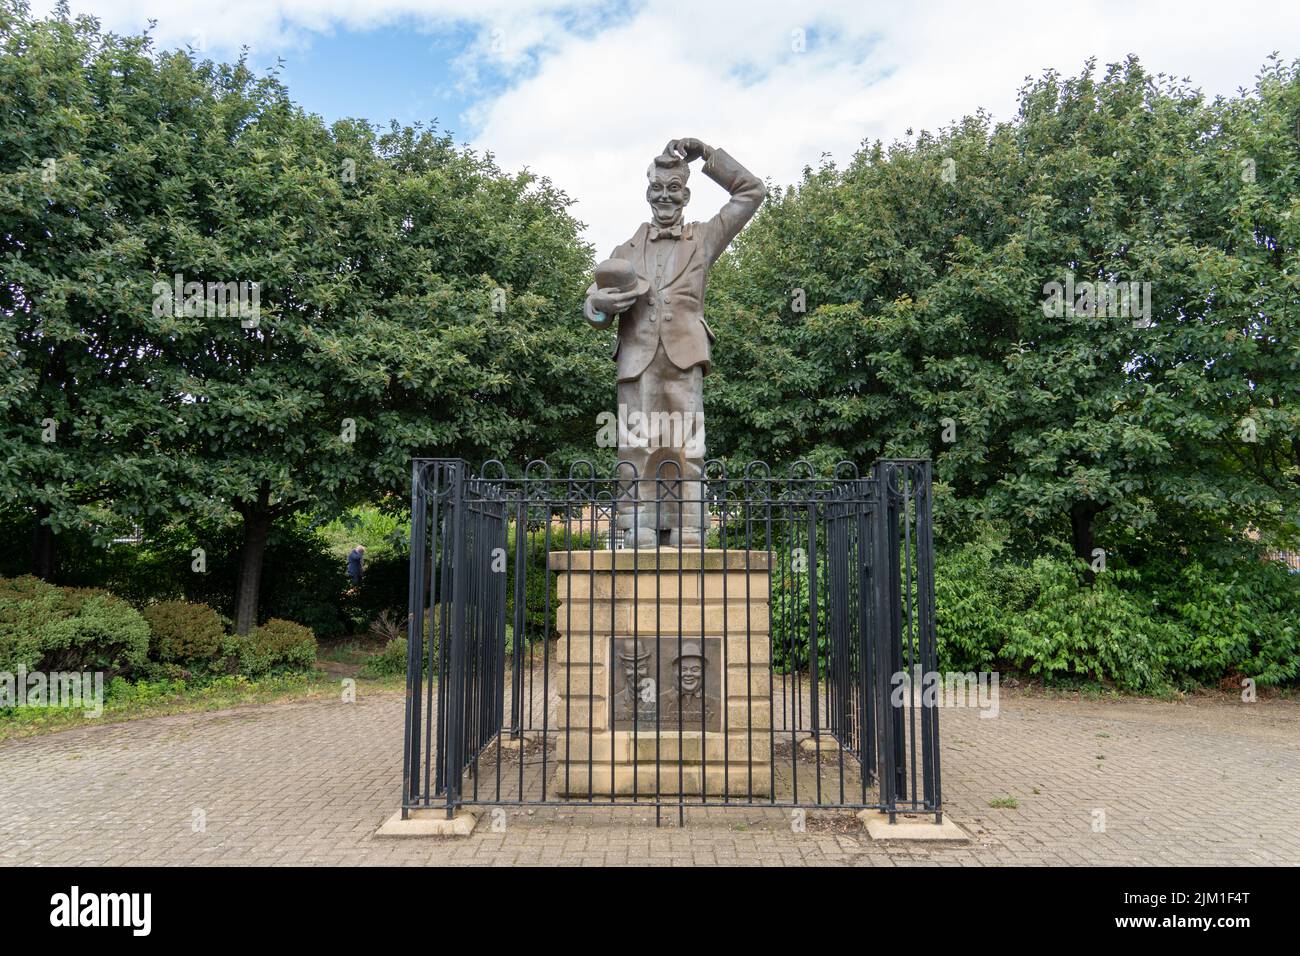 Statue de Laurel Park de Stan Laurel, du duo de comédiens Laurel et Hardy, qui a vécu dans la ville de North Shields, North Tyneside, Royaume-Uni quand il était enfant. Banque D'Images